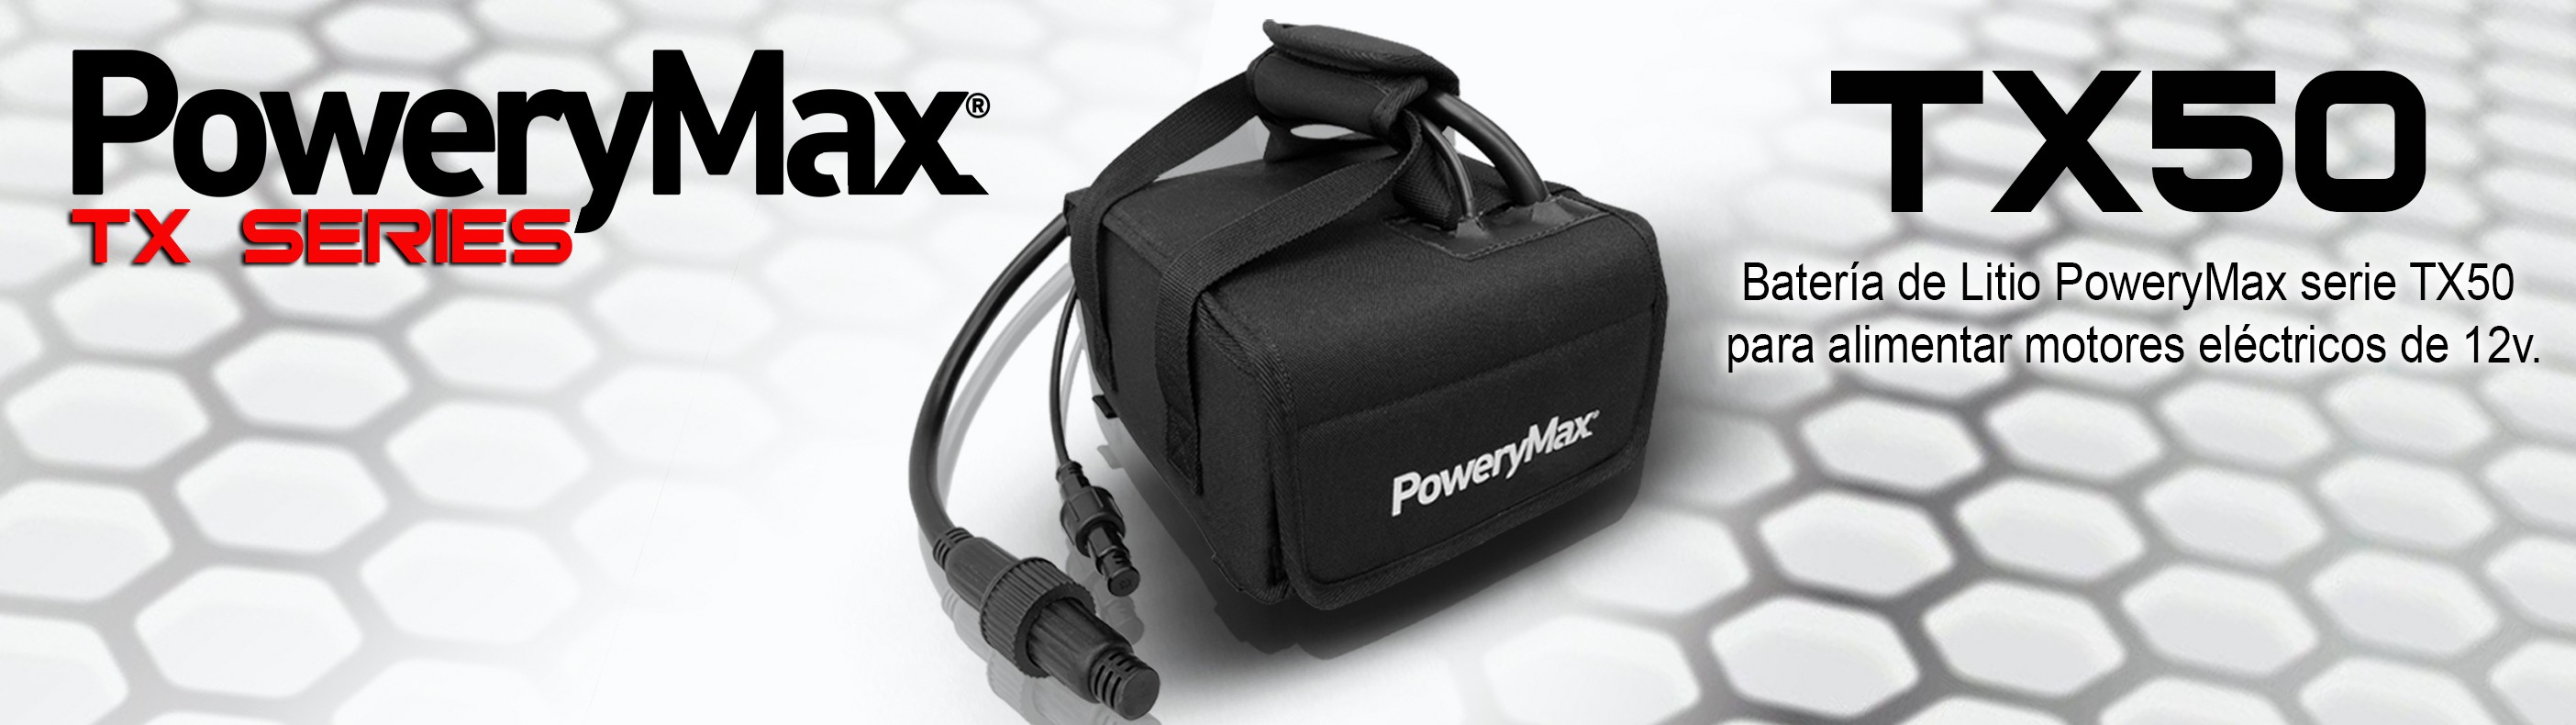 Batería PoweryMax serie TX50 de 50Ah. Batería de litio portátil de ultima generación para alimentar motores eléctricos de 12v